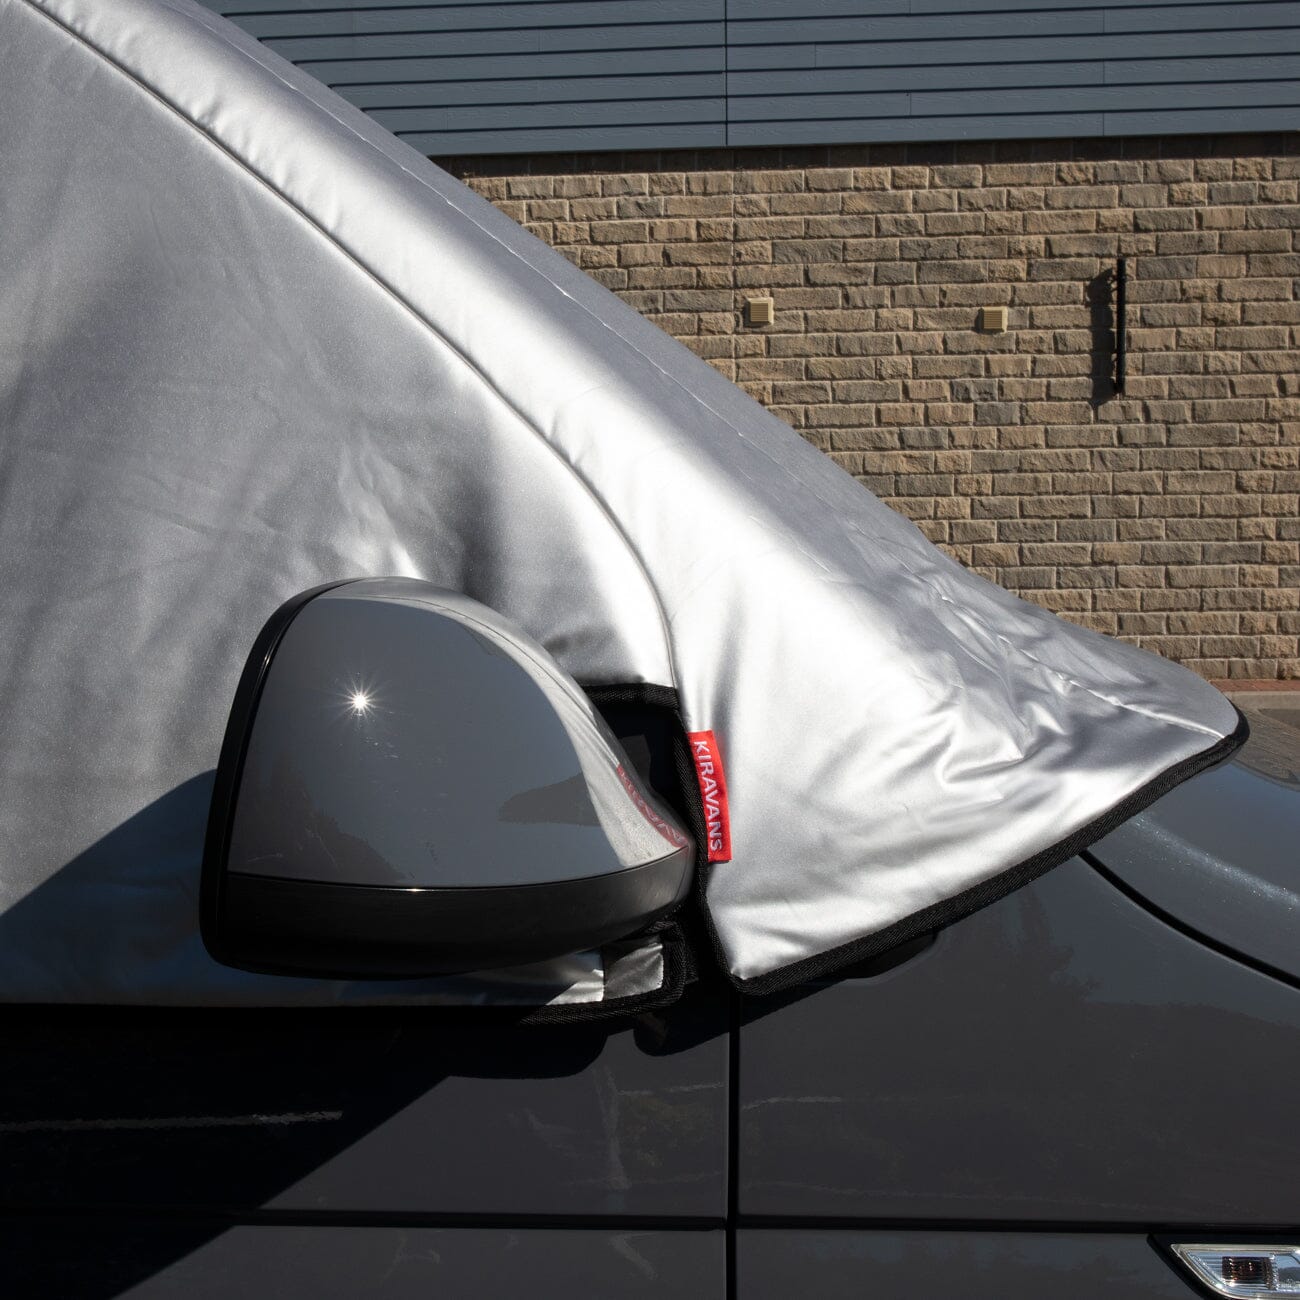 KIRAVANS External Thermal Cab Window Silver Screen - Ford Transit Custom Designed by Kiravans 